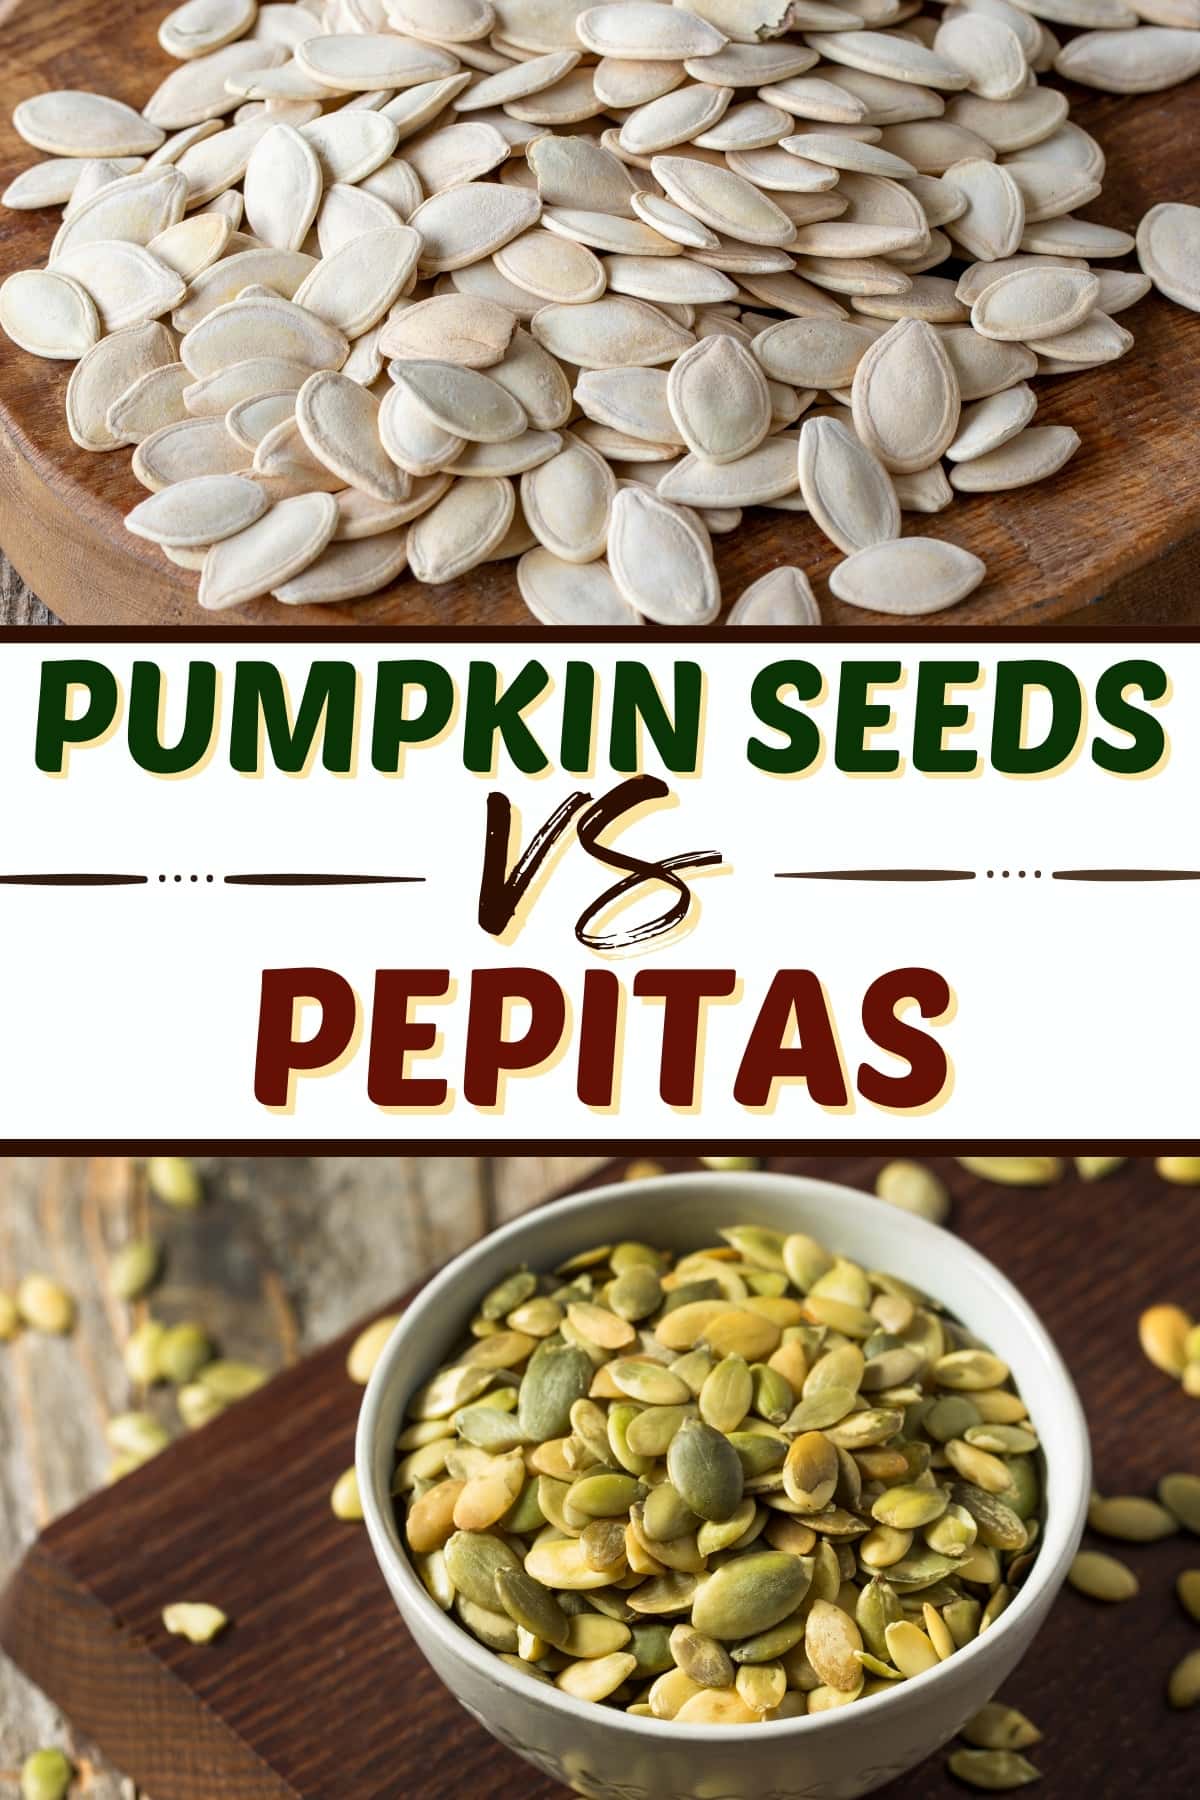 Pumpkin seeds vs pepitas